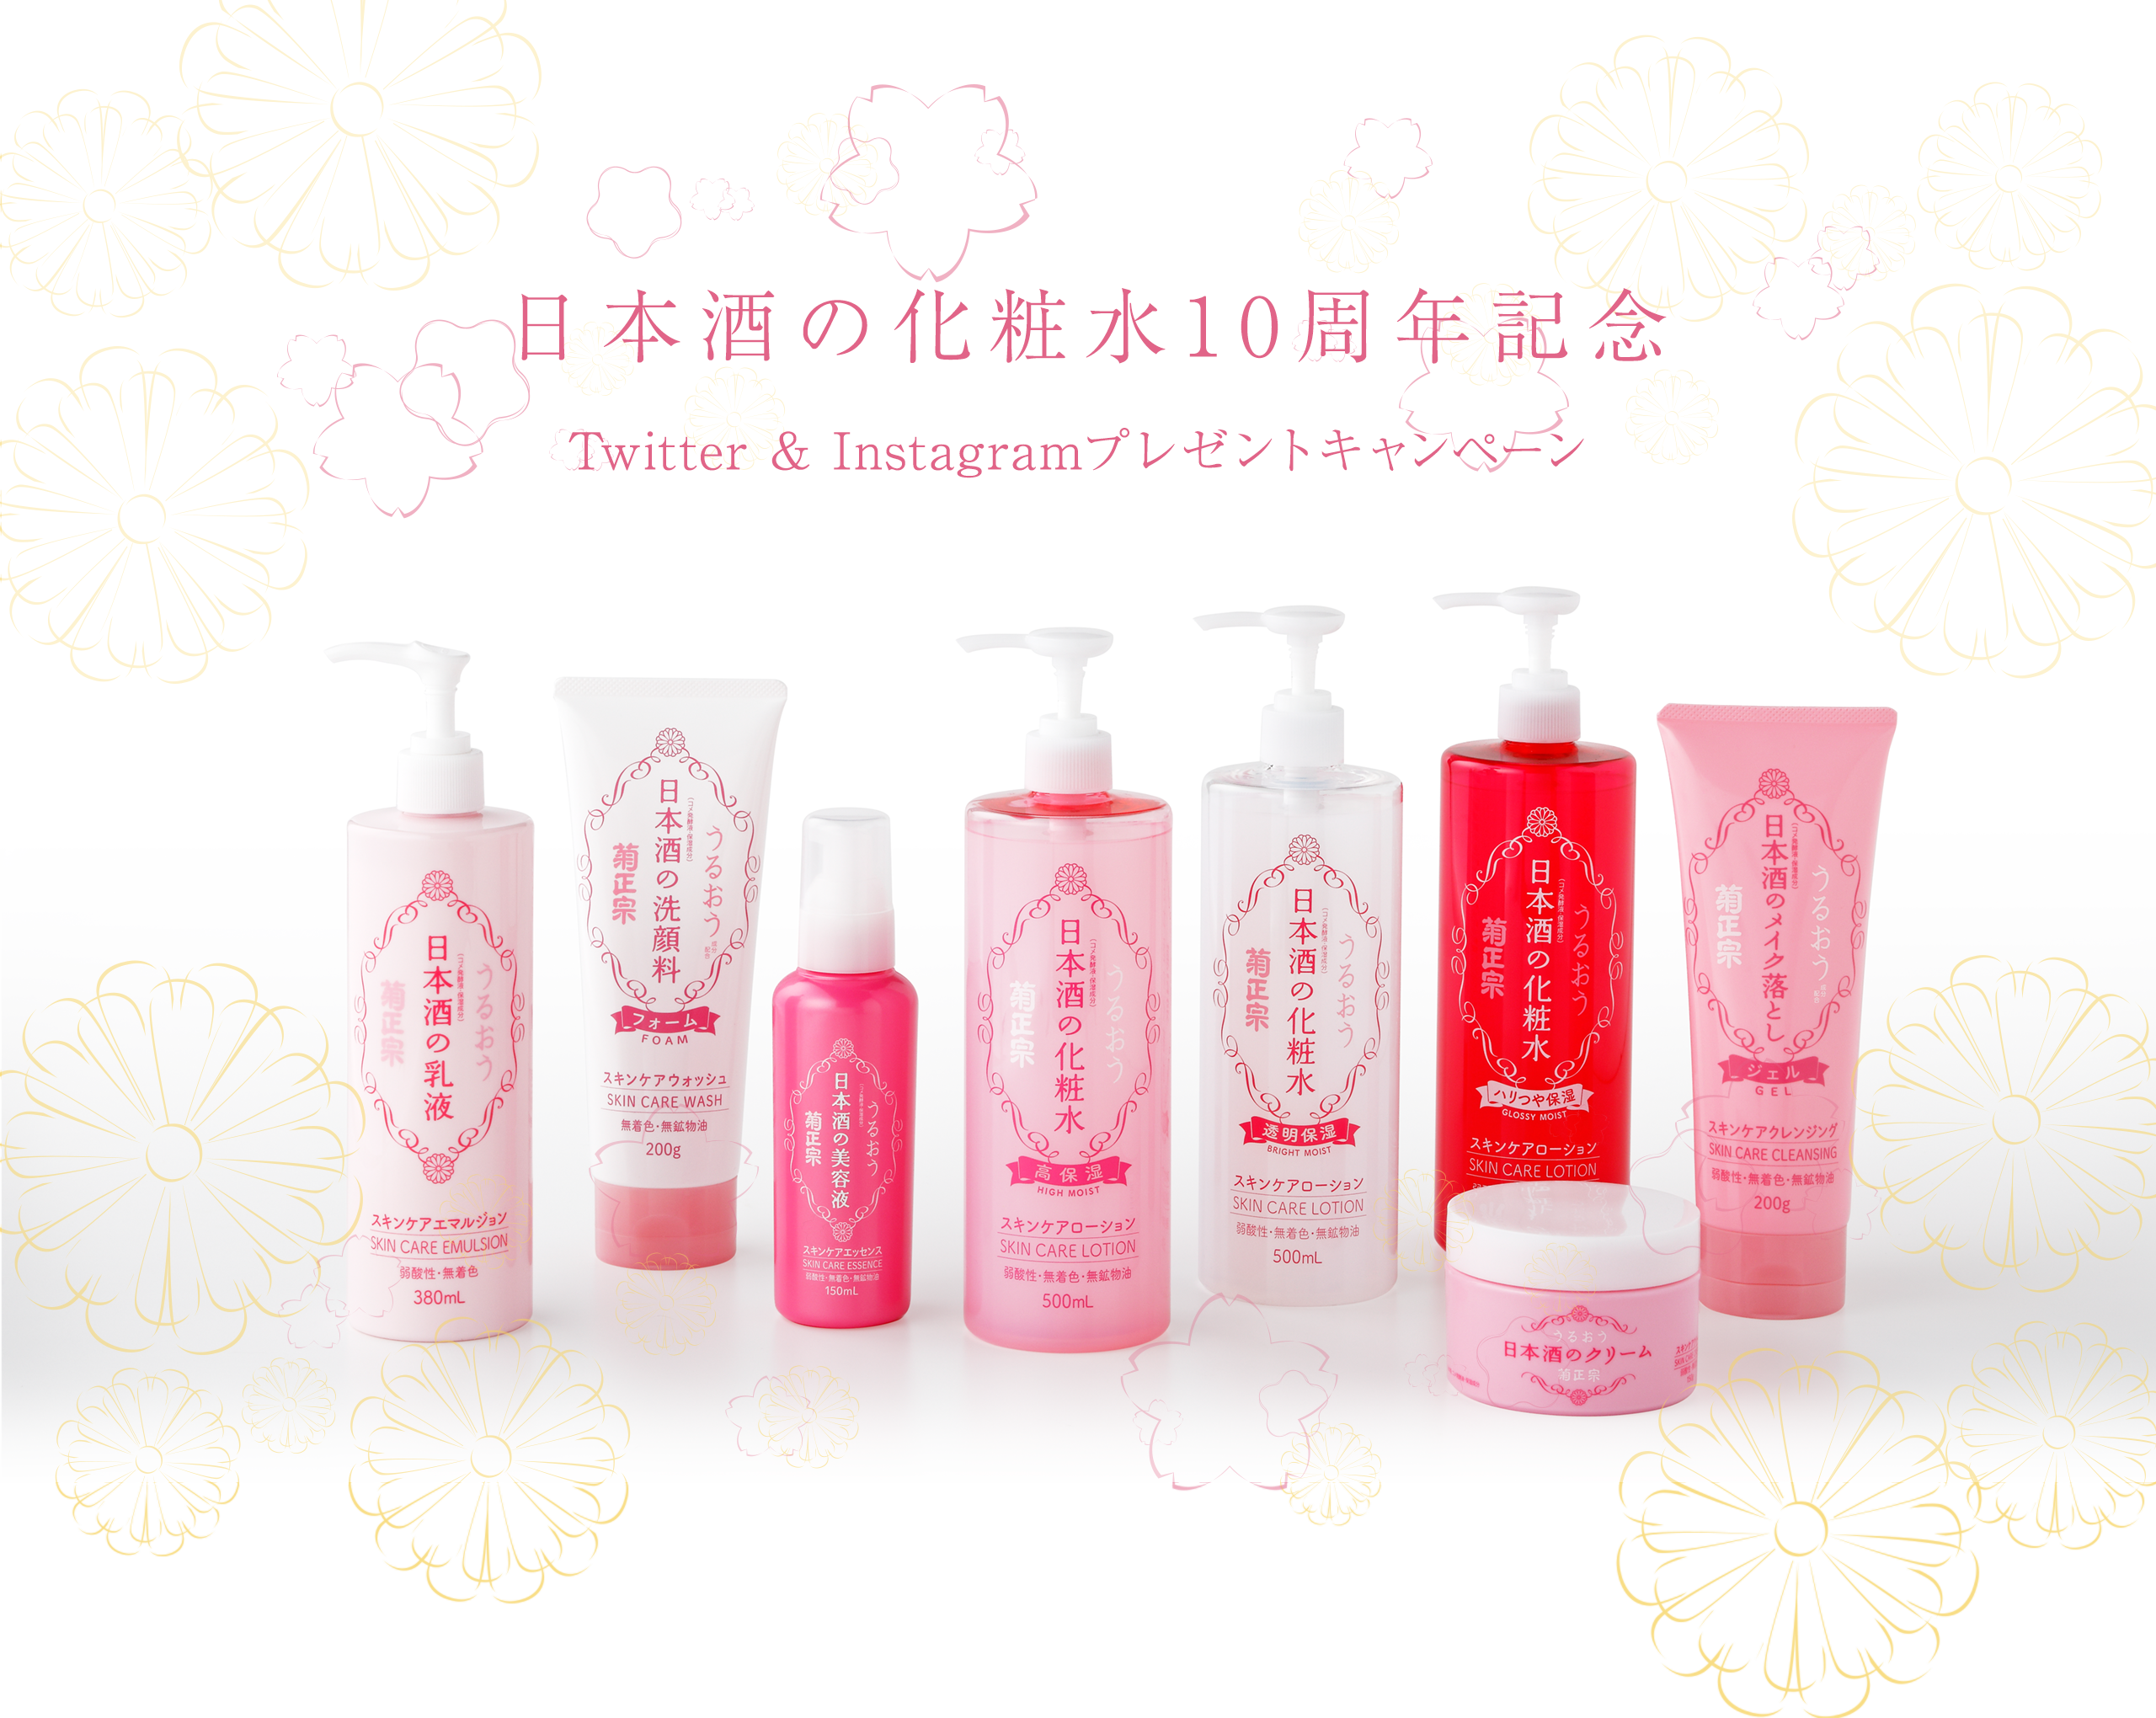 日本酒の化粧水10周年記念 Twitter & Instagramプレゼントキャンペーン